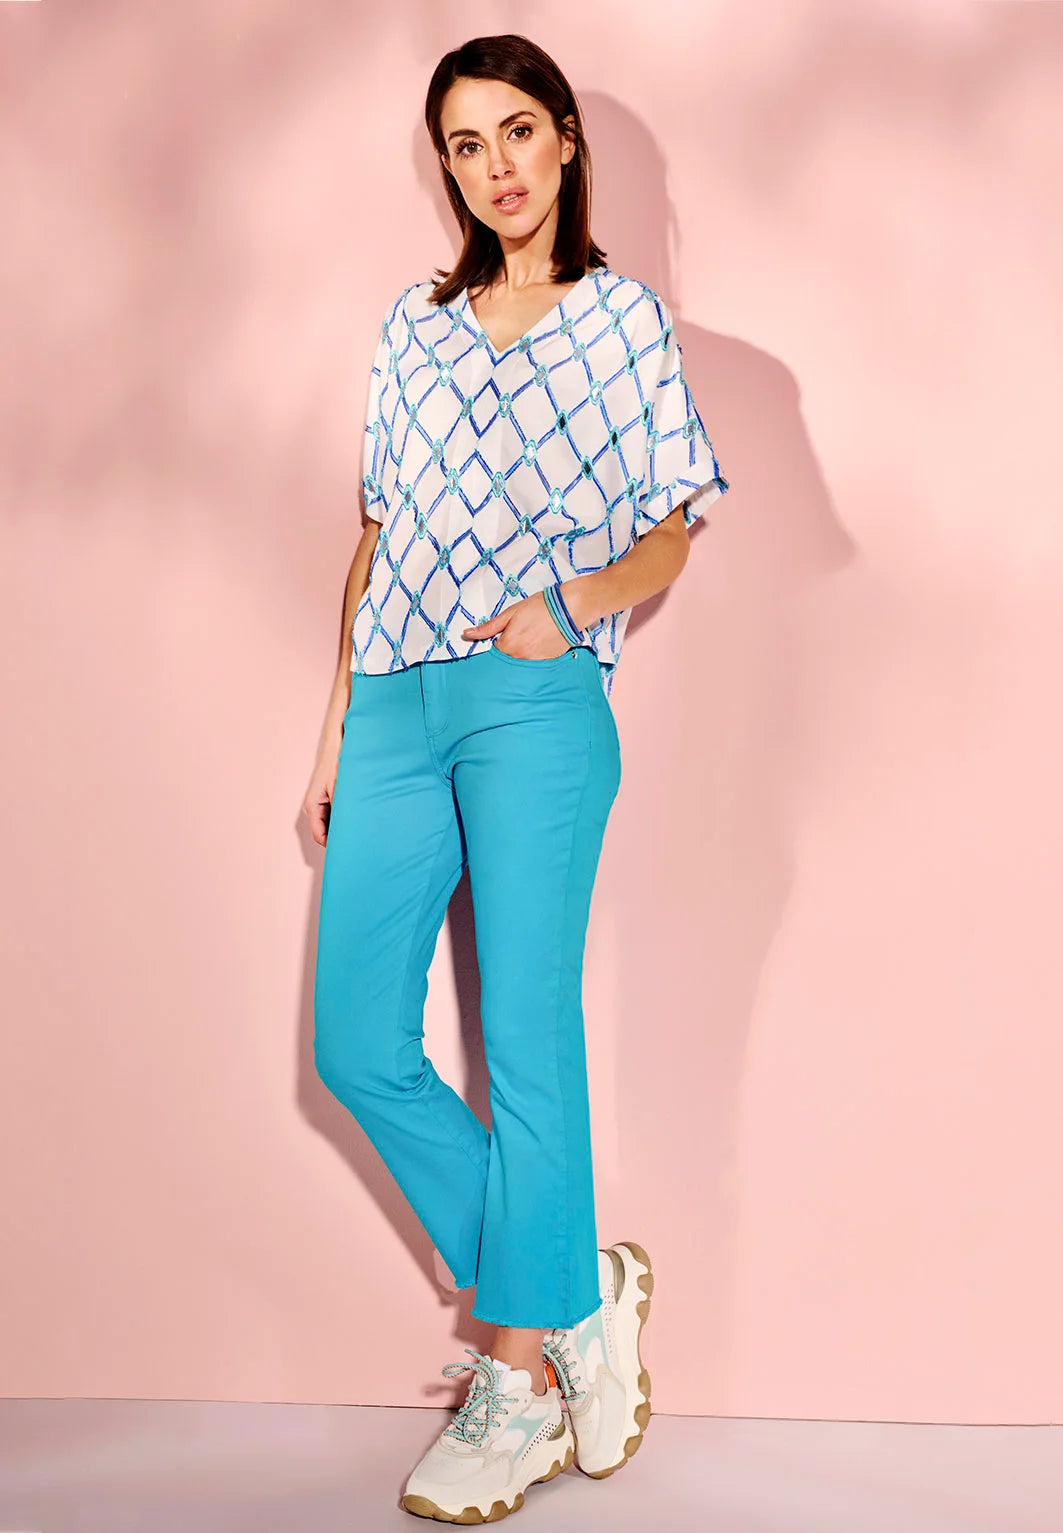 Azure broek en een blouse met azure afwerking erboven